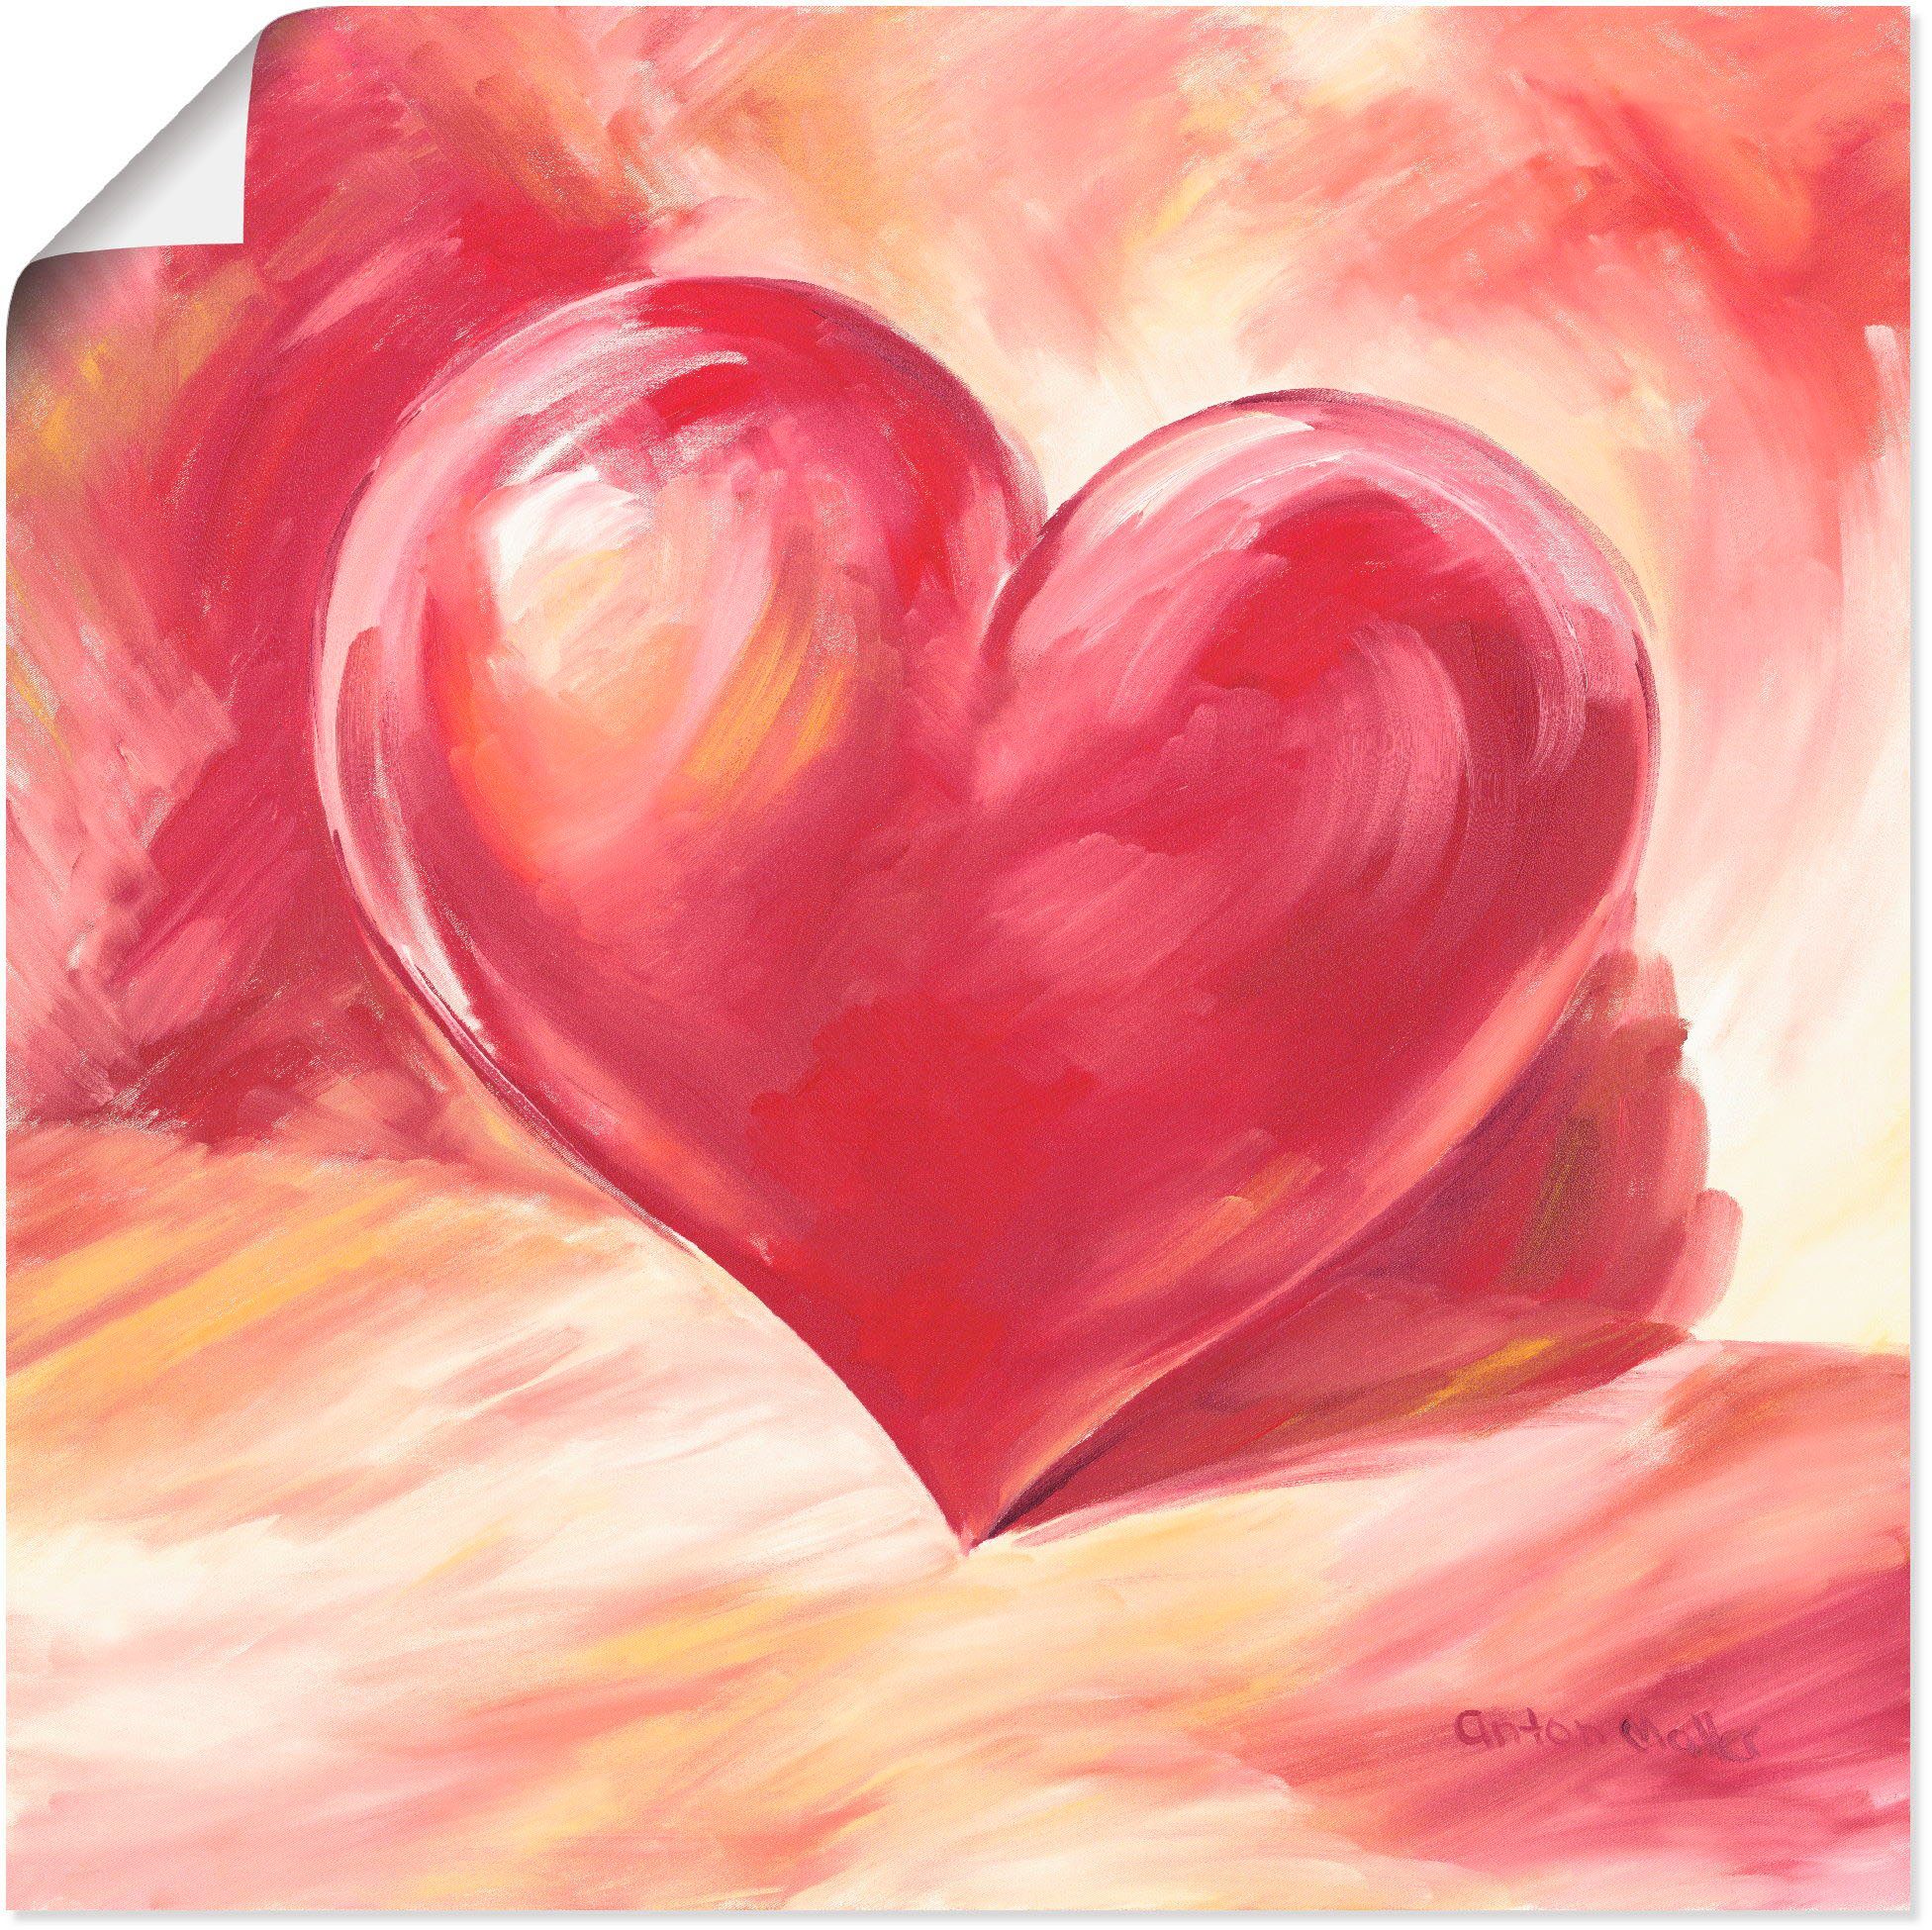 Artland Artprint Roze/rood hart in vele afmetingen & productsoorten - artprint van aluminium / artprint voor buiten, artprint op linnen, poster, muursticker / wandfolie ook geschik